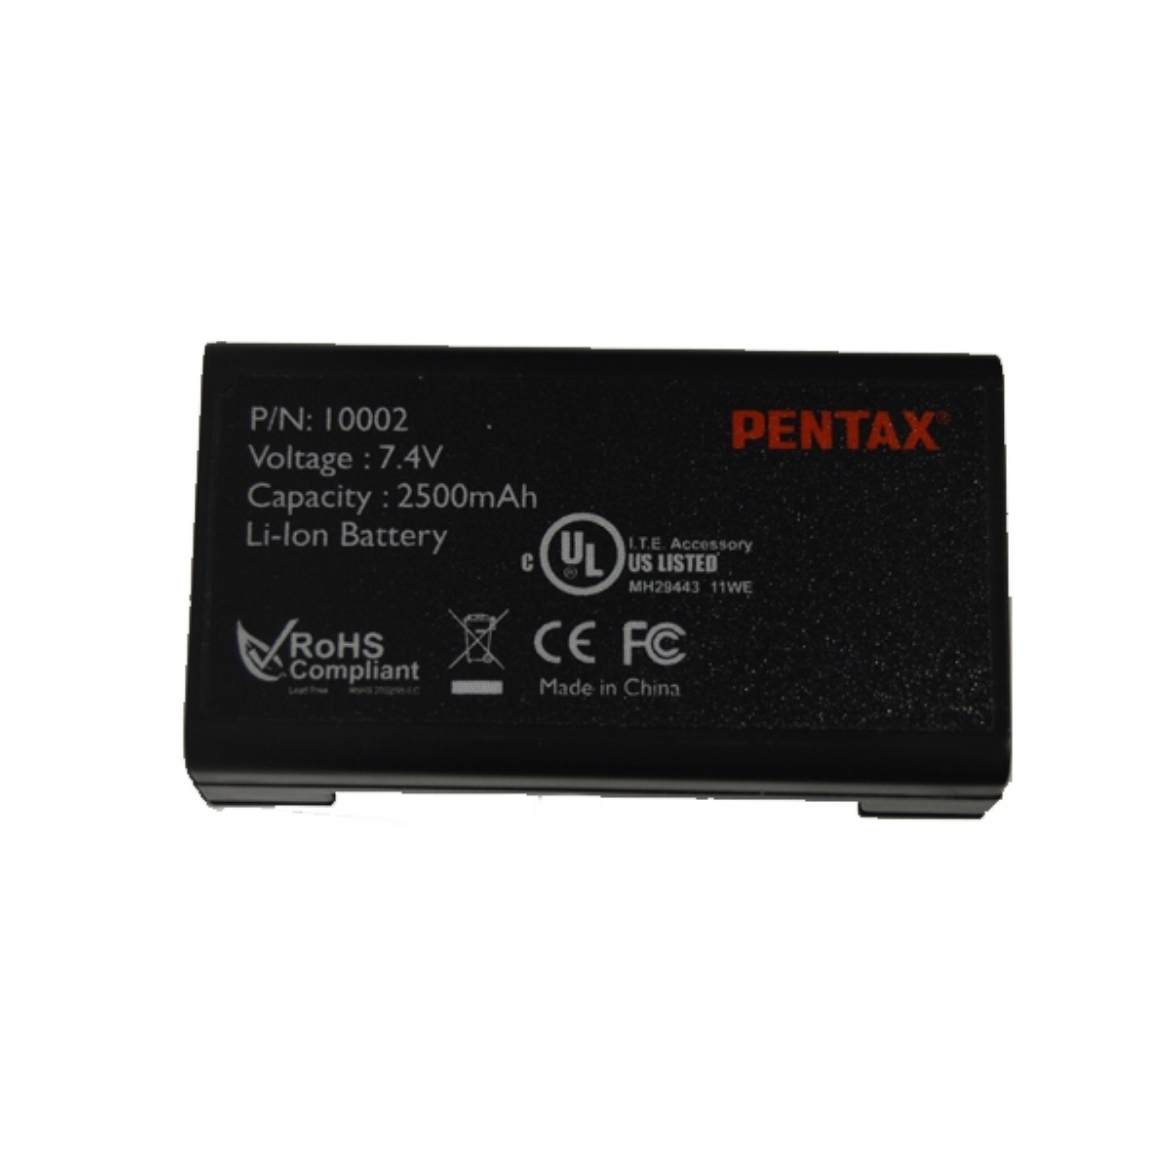 PENTAX BP07 Model Lityum-İon Batarya - R1500N - W1 resmi